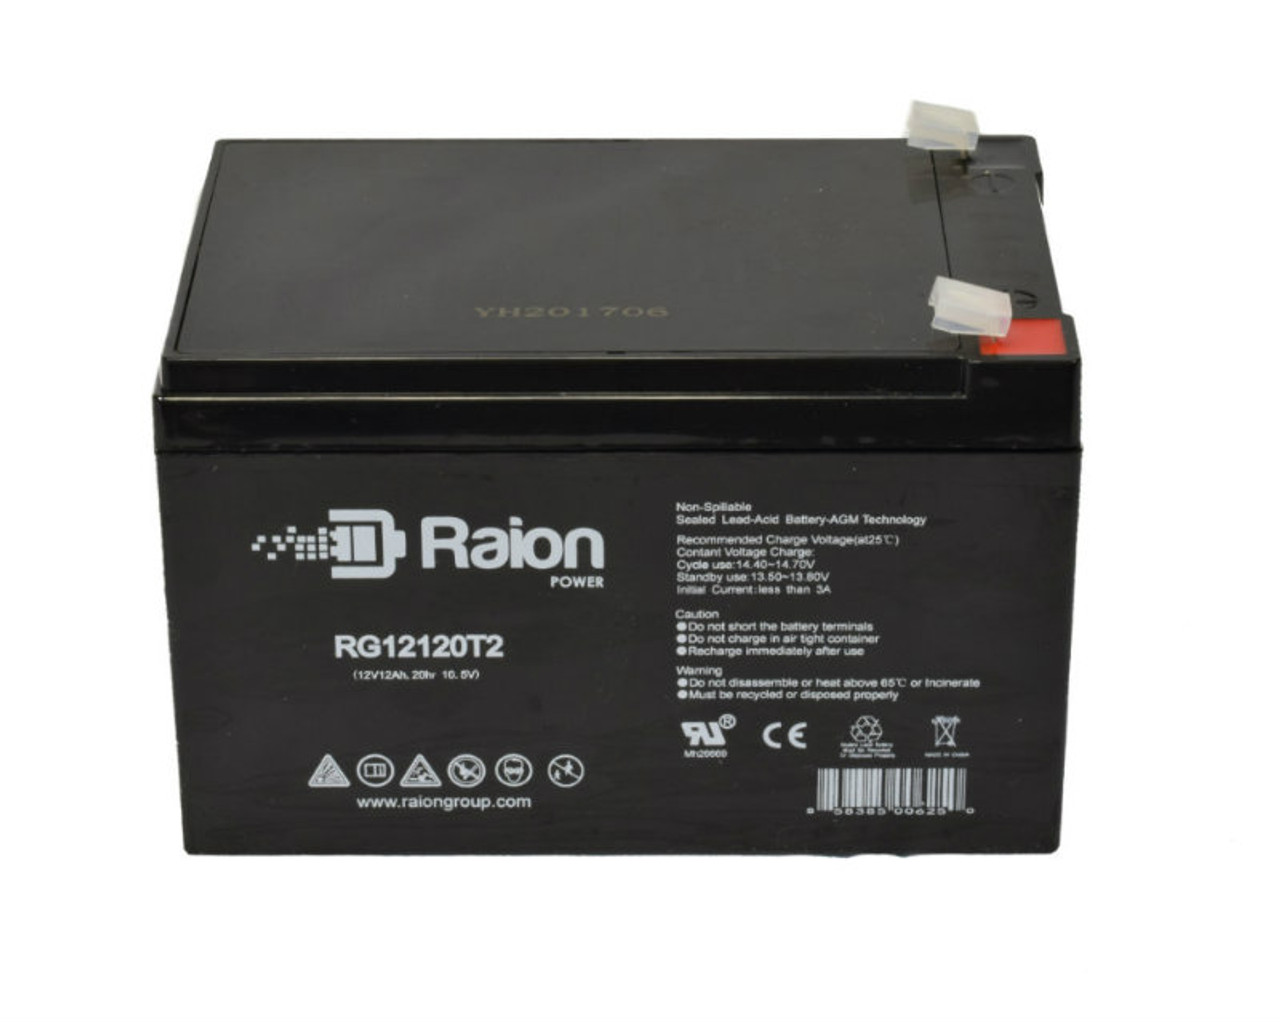 Raion Power RG12120T2 SLA Battery for Tao Motor E1-350